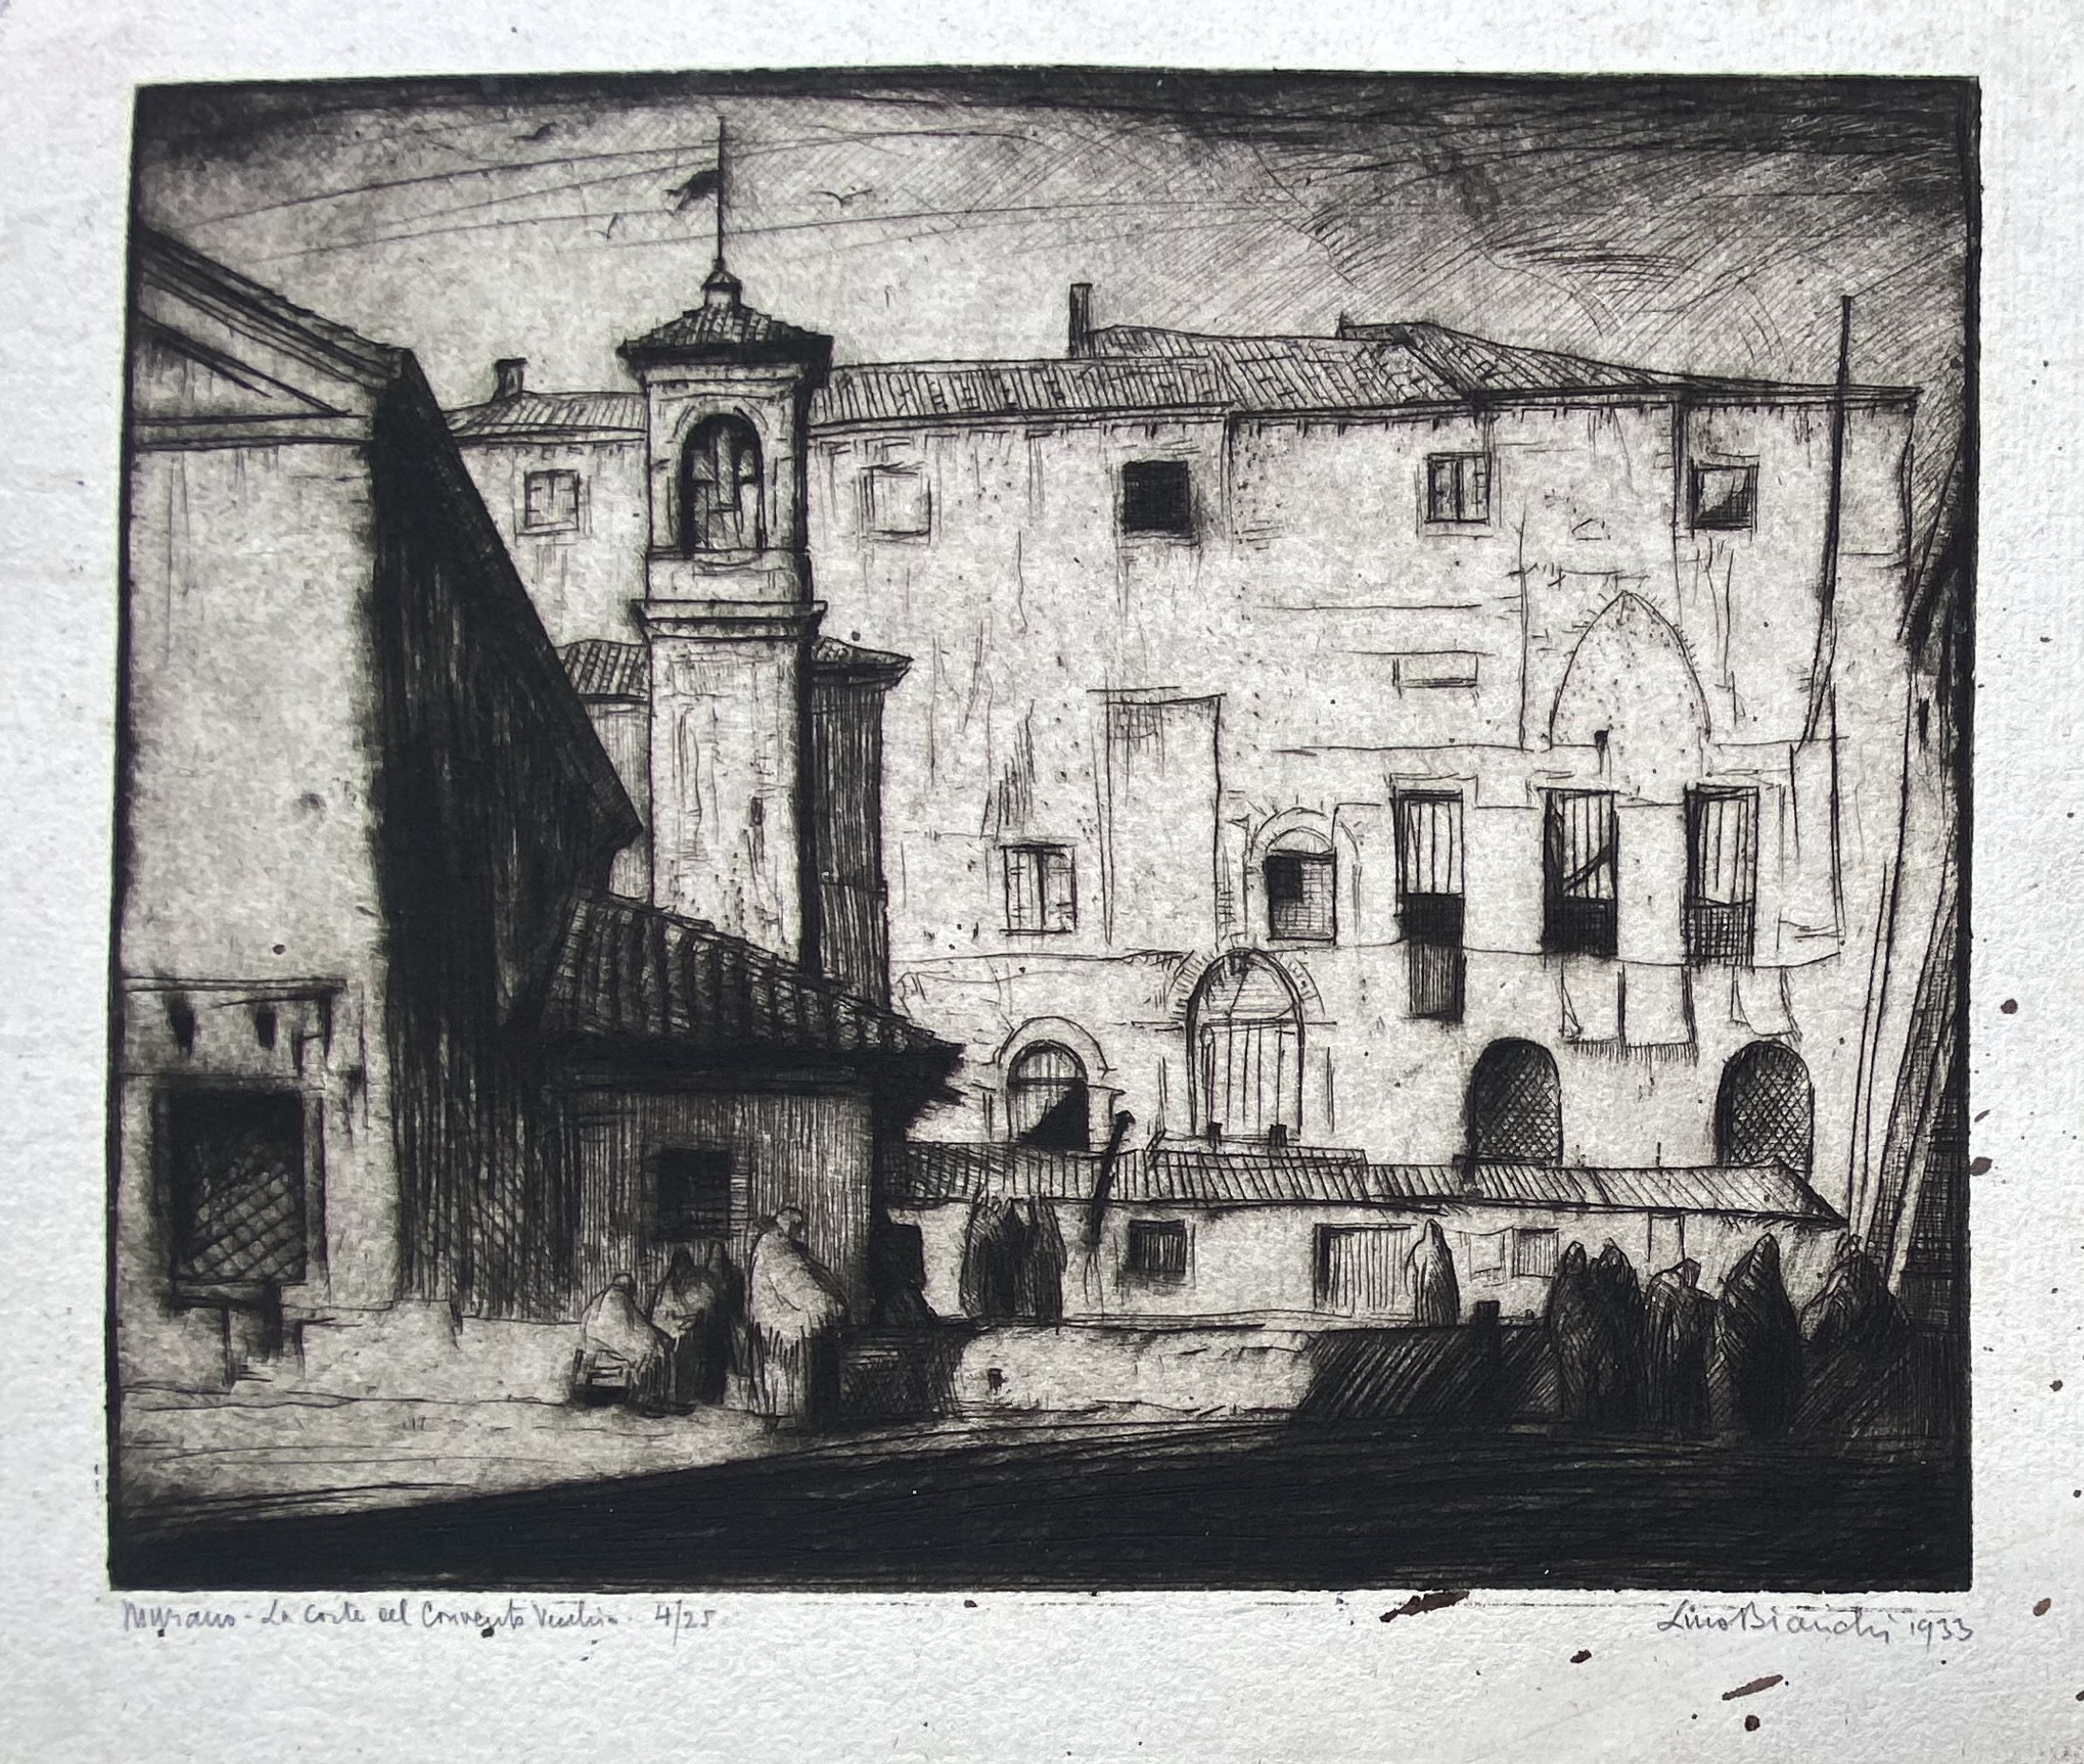 Murano-La Corte del Convento Vecchio, 1933